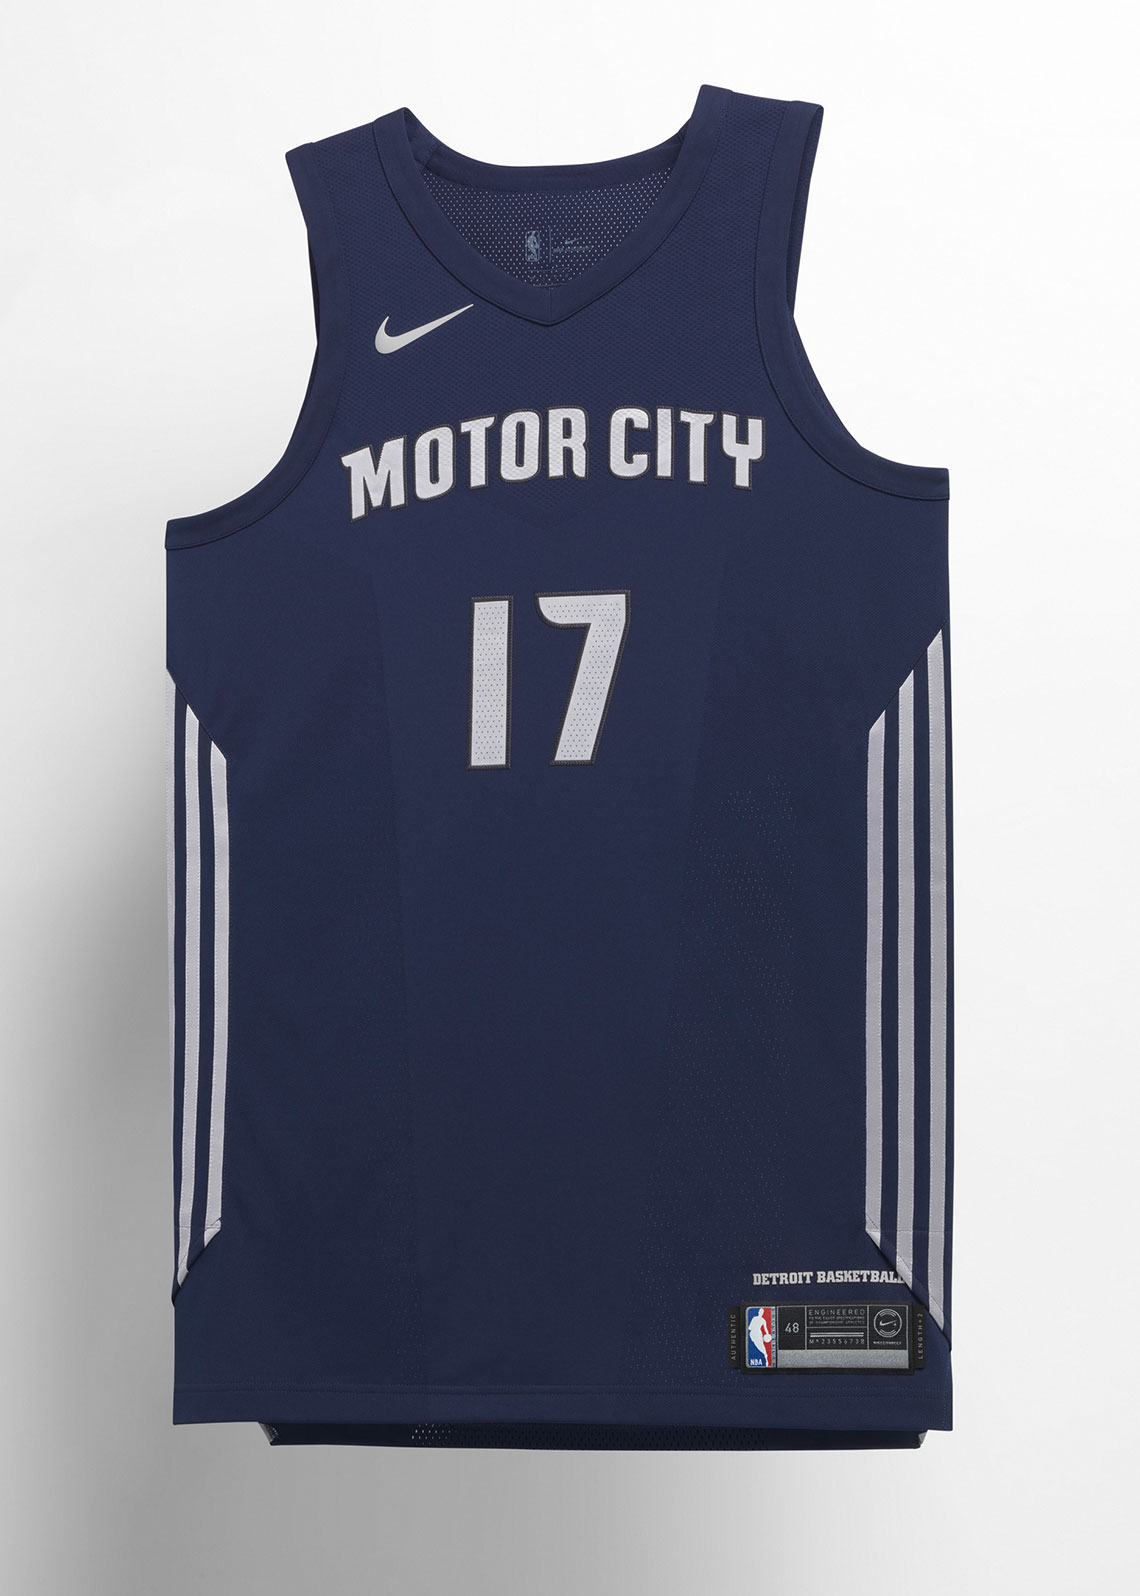 Nba City Edition Uniforms Detroit Pistons